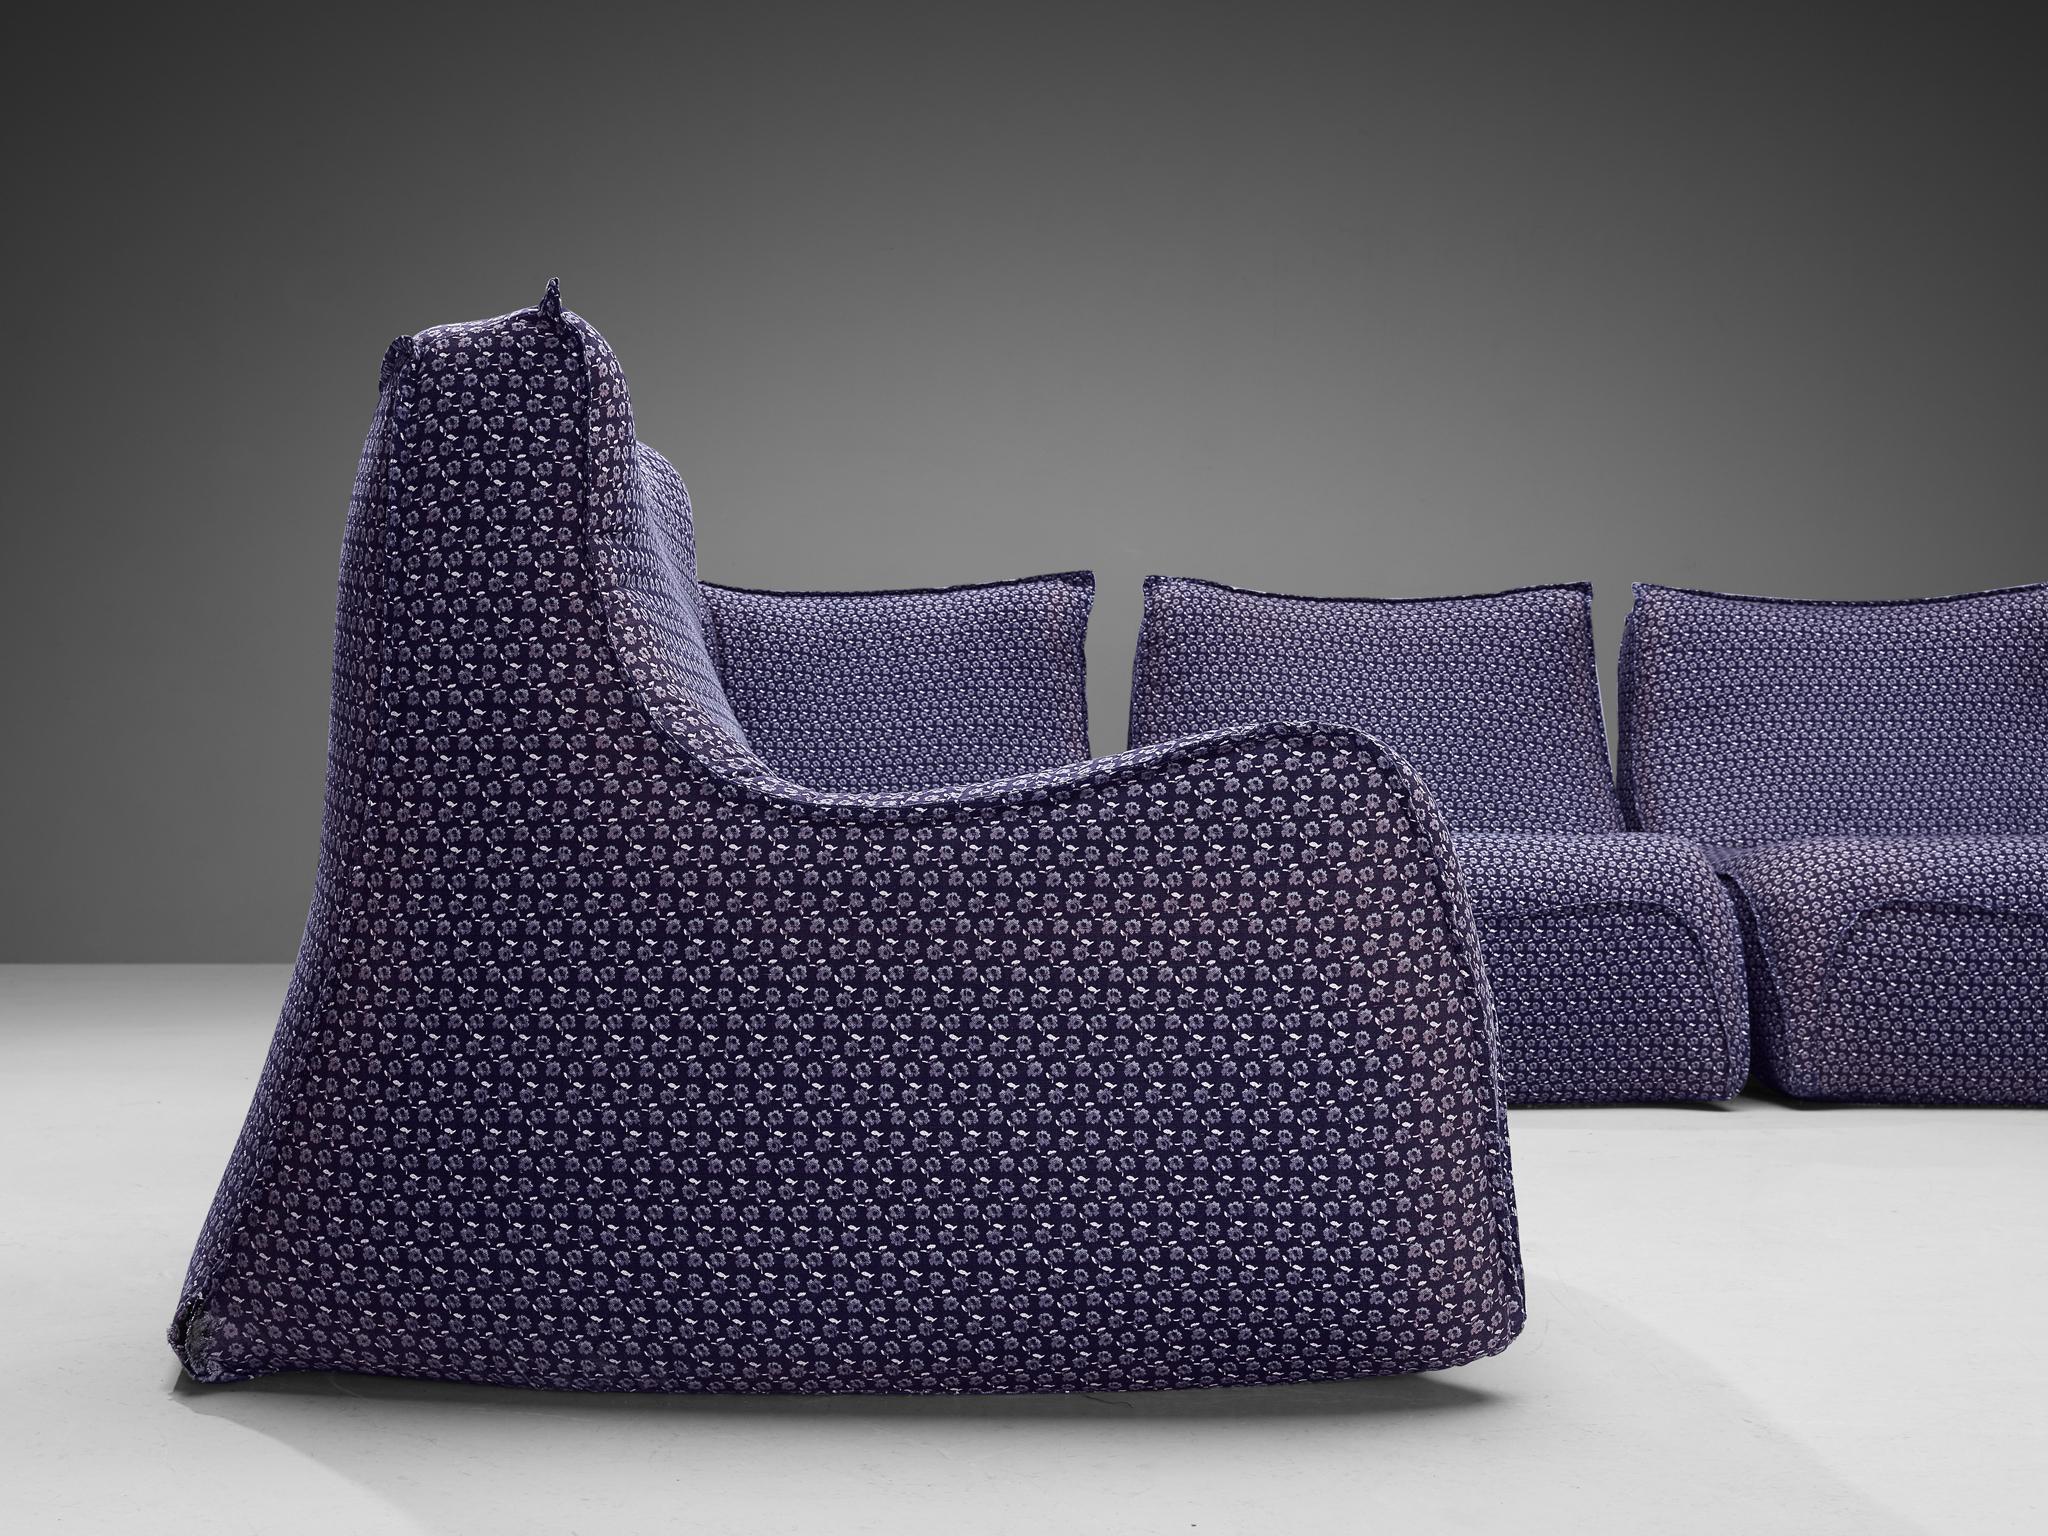 French Rare Bernard Govin for Ligne Roset Sectional Sofa in Purple Upholstery For Sale